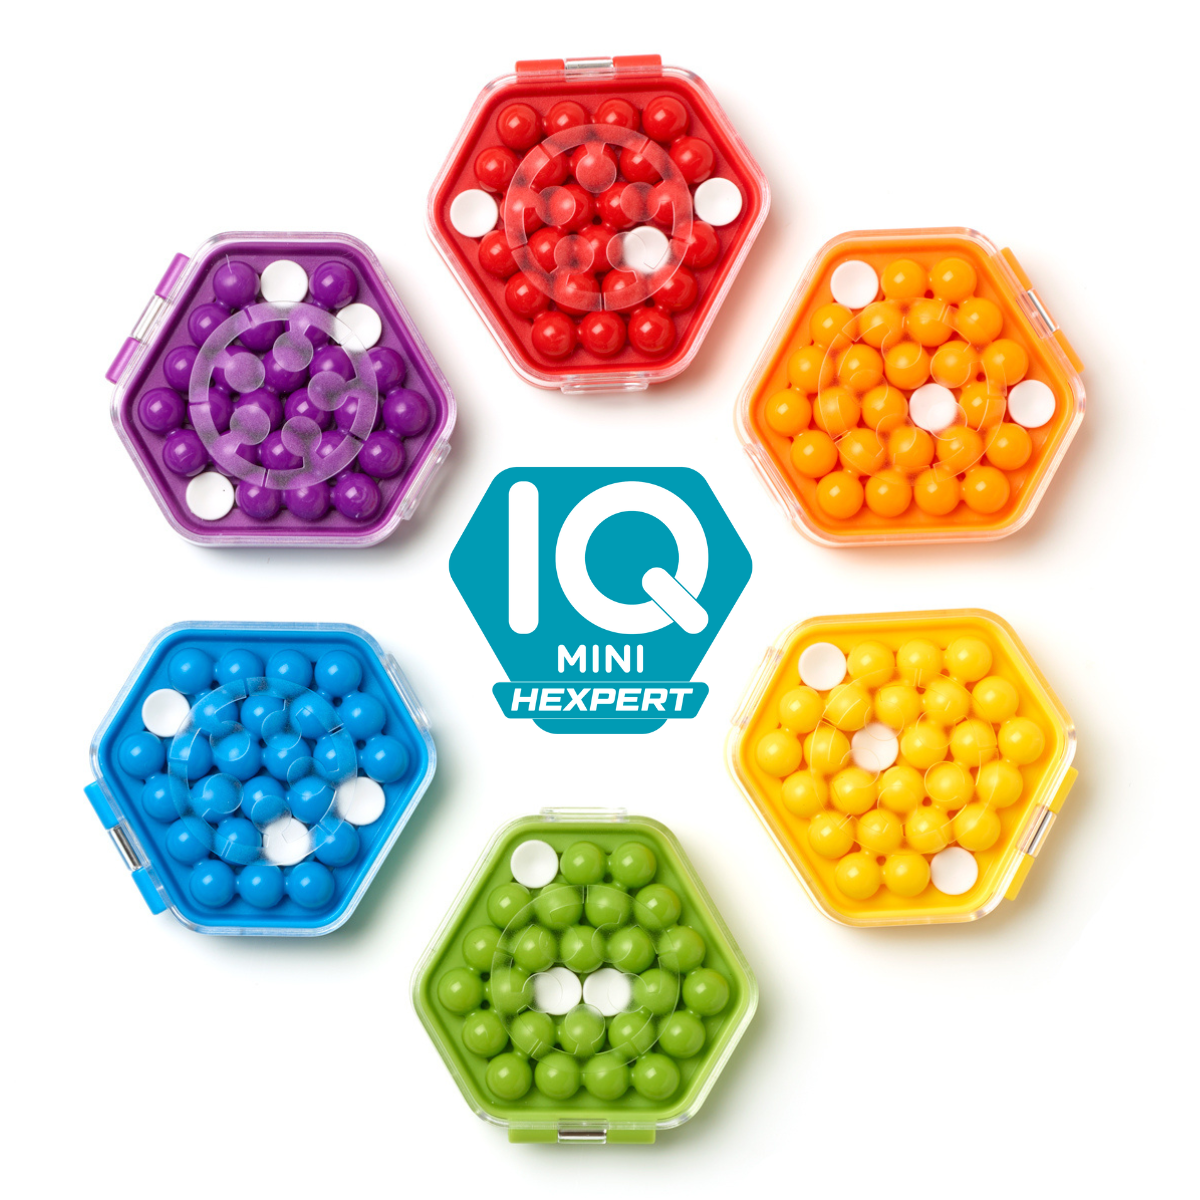 IQ Mini – IUVI Games